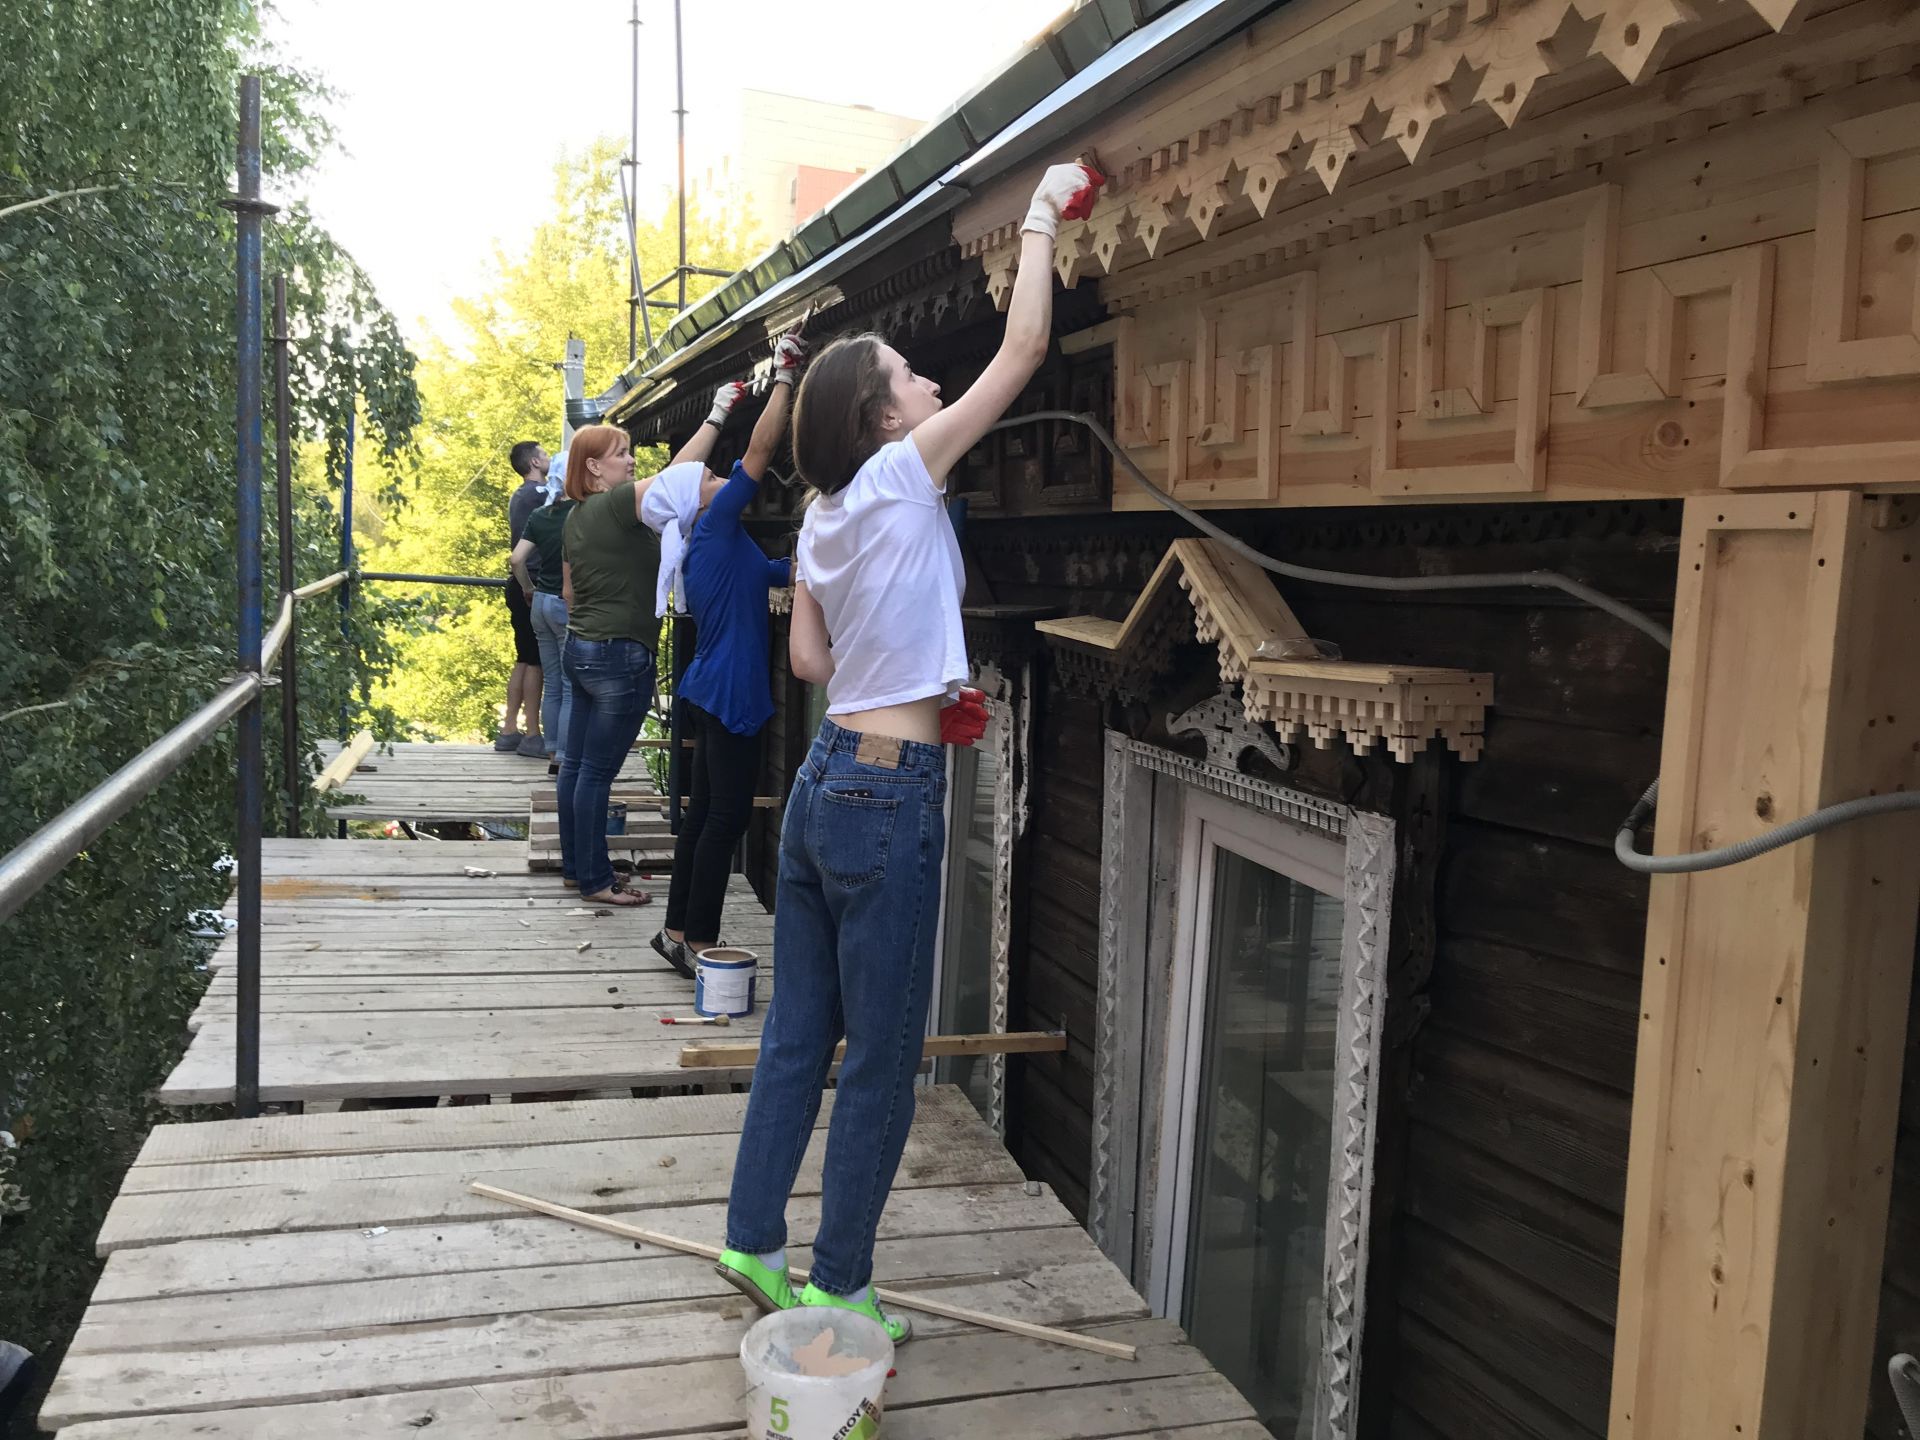 Фестиваль Тома Сойера в Казани: домик покраснел. 19 июня 2019